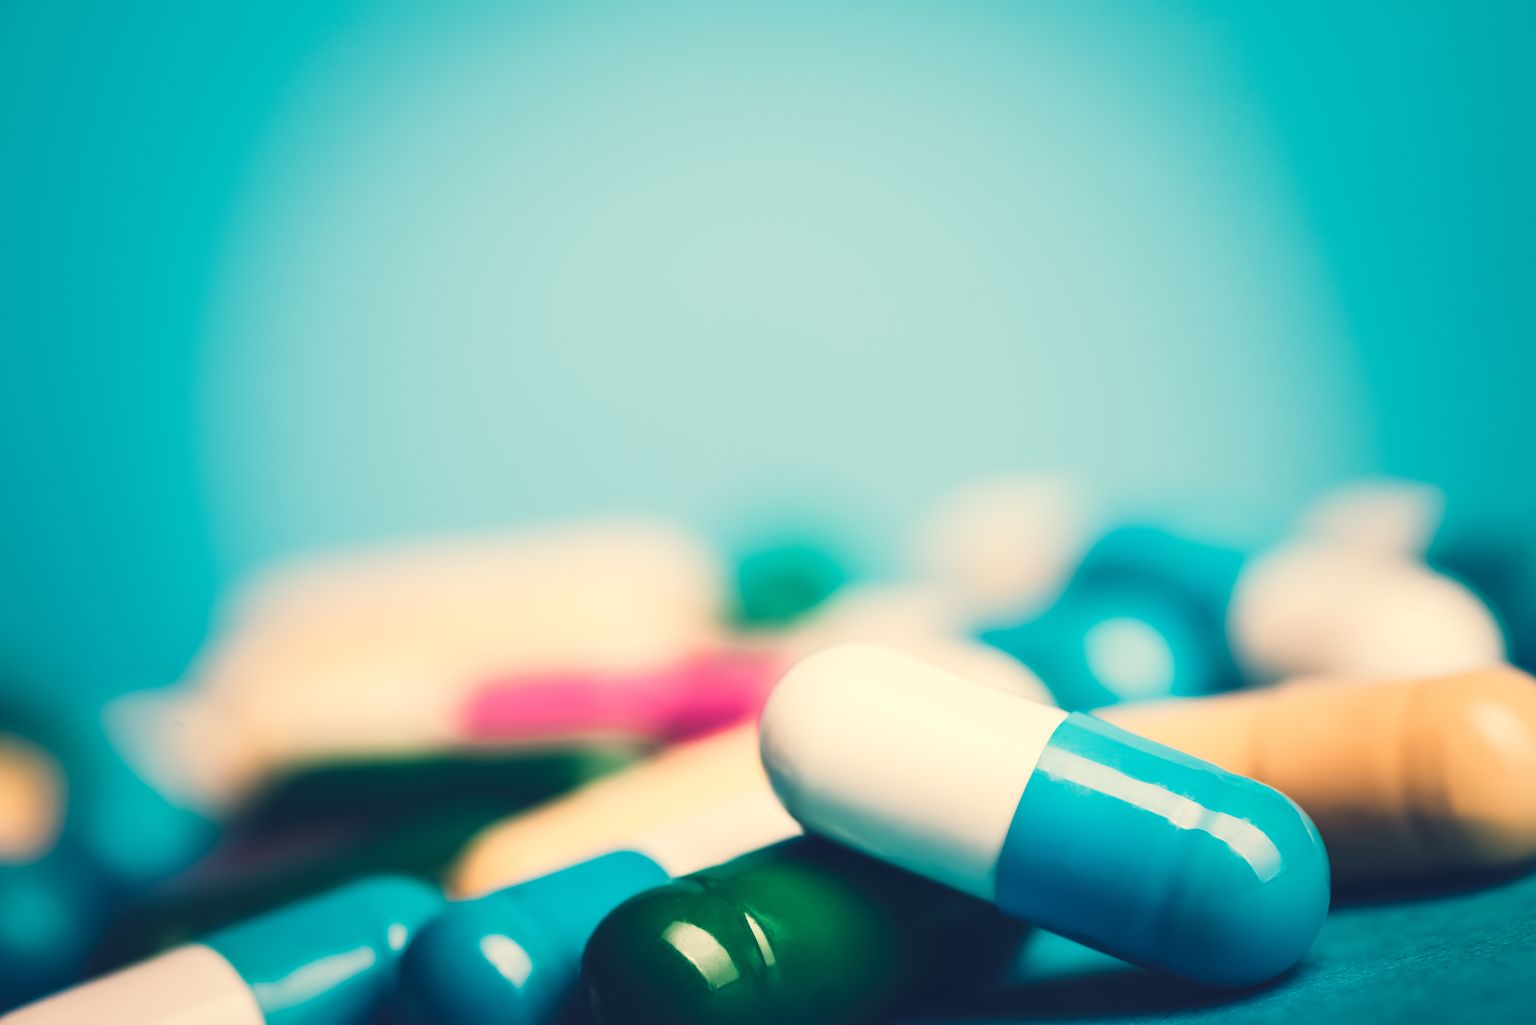 Medicamentos-pastillas o cápsulas verdes y amarillas sobre fondo azul con espacio de copia.Prescripción de medicamentos para el tratamiento. Medicamentos para la curación en contenedores para la salud. Antibióticos